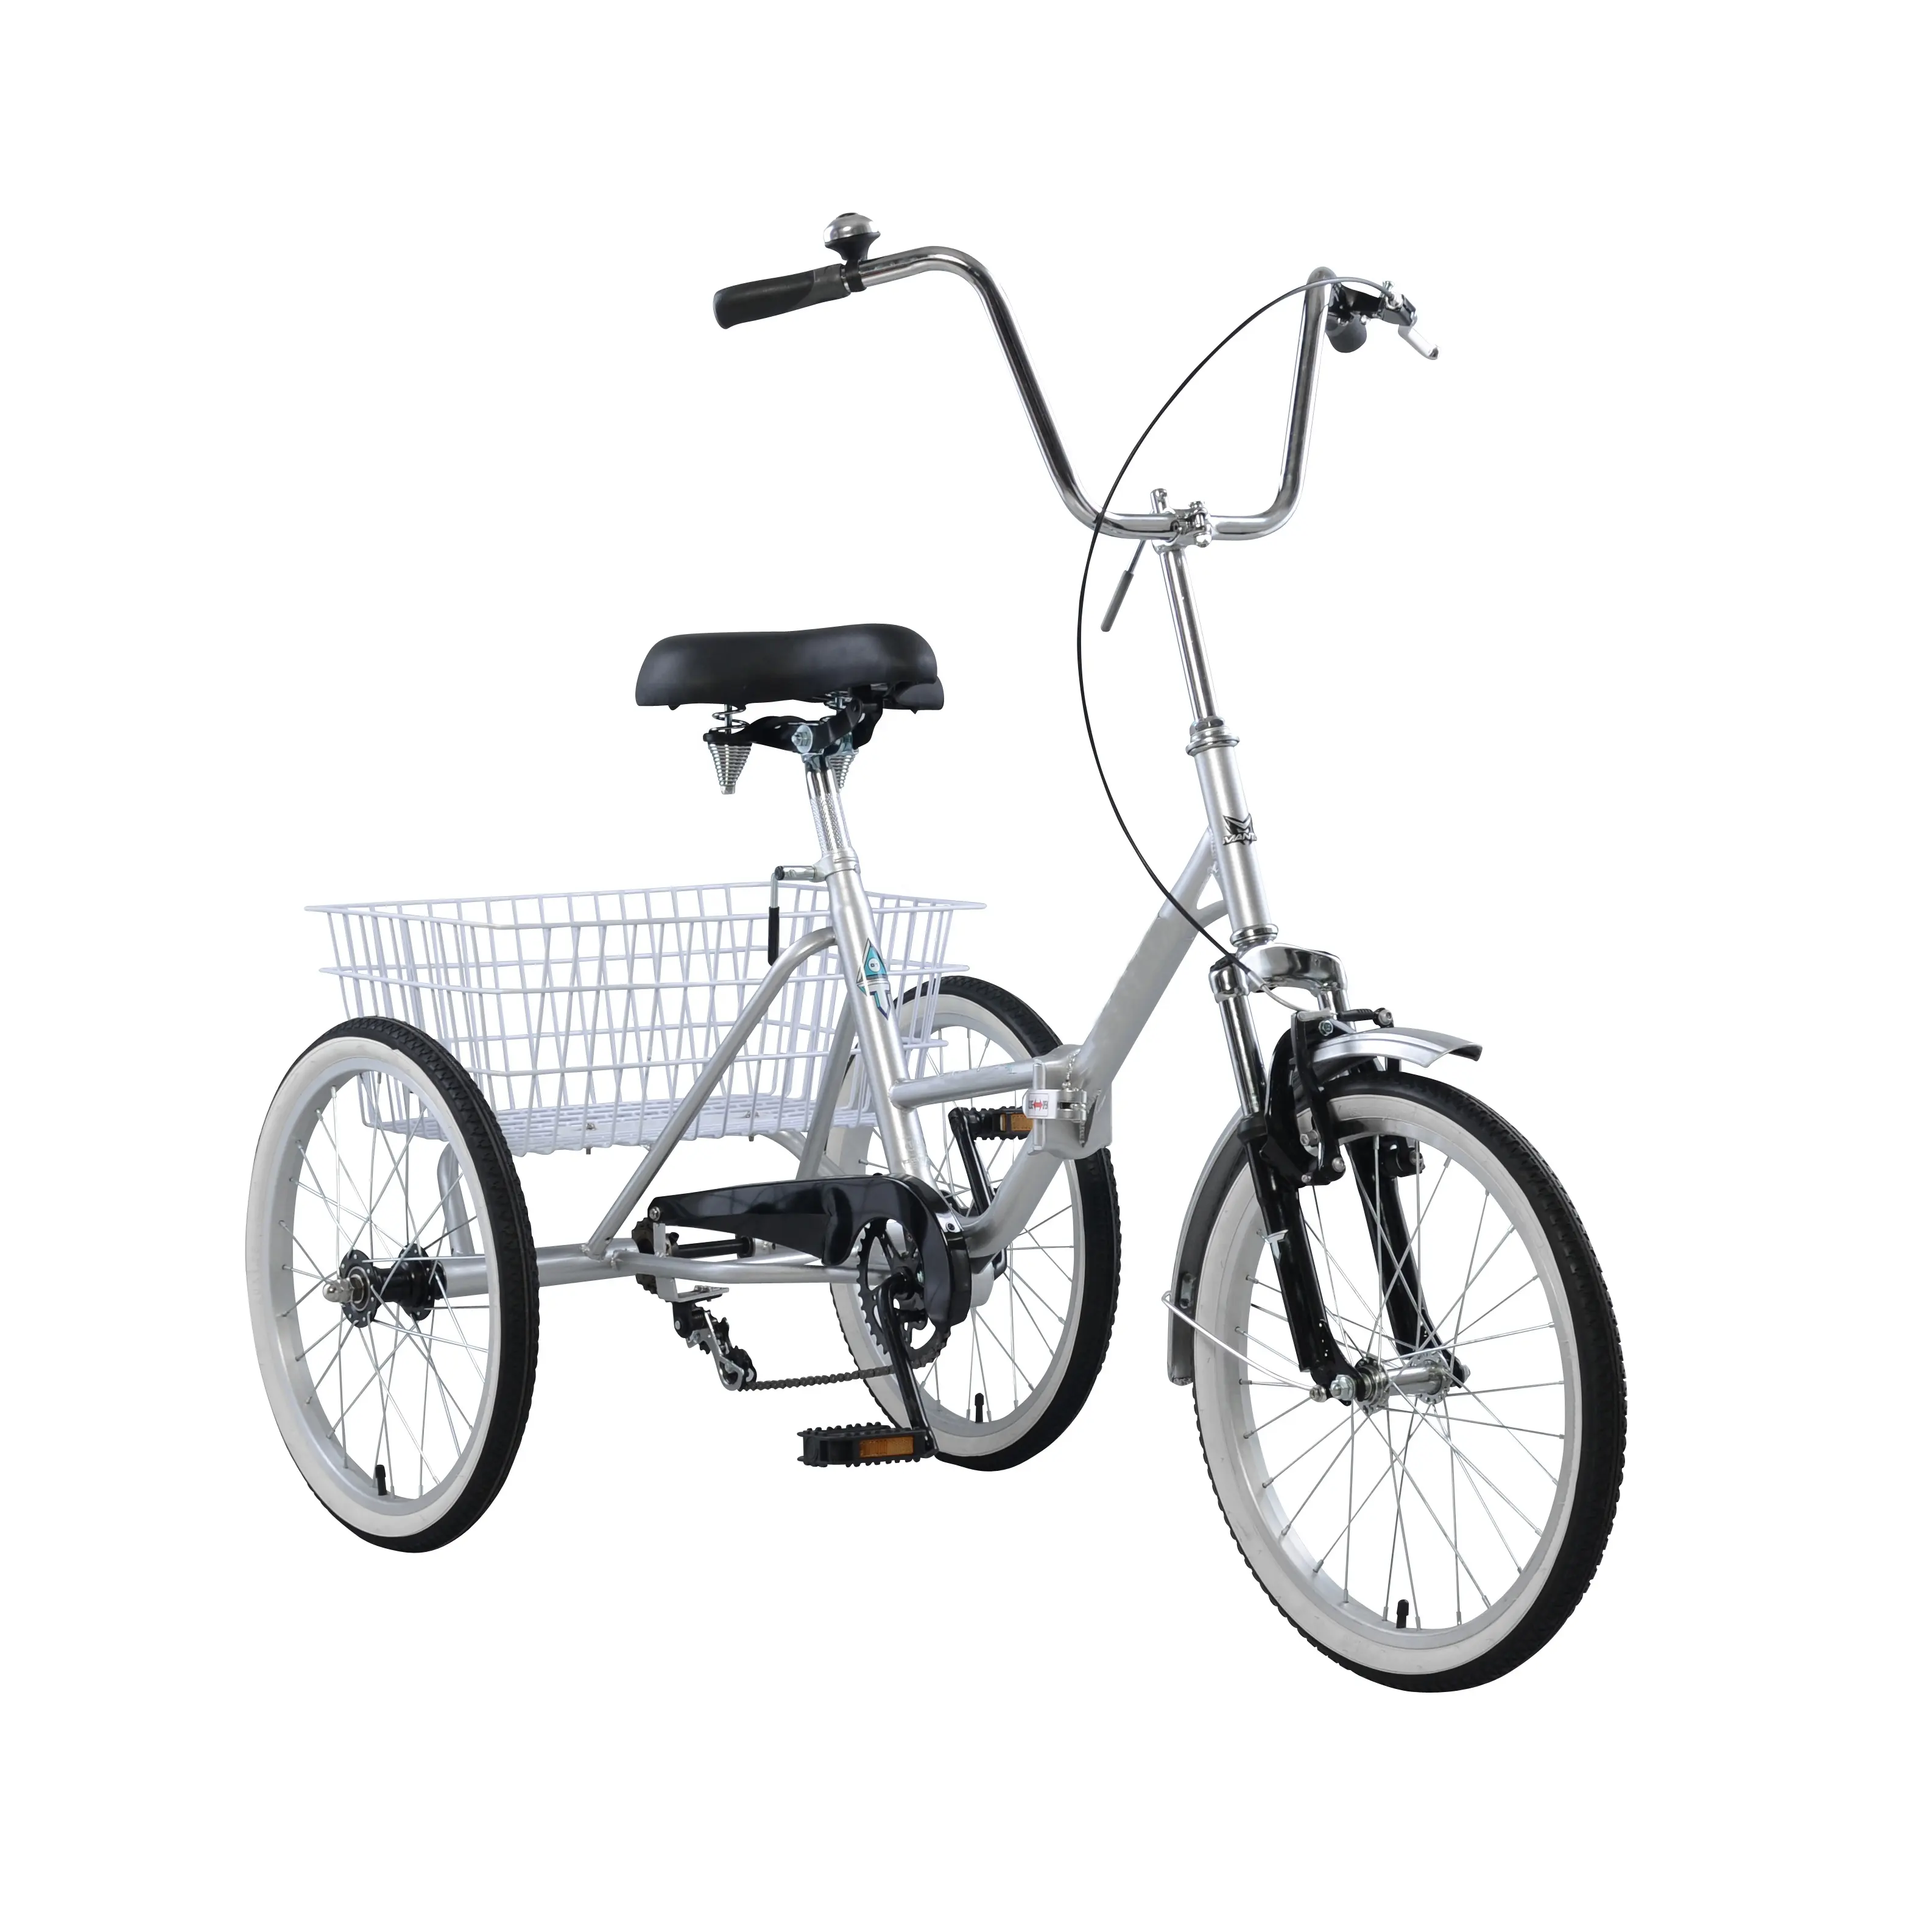 Трехколесный велосипед взрослый байк. Mantis 3 колесный велосипед. Эл.велосипед трехколесный трицикл Дункан трайк 24. Trike Delta велосипед трехколесный. 3х колёсный велосипед взрослый Дункан.